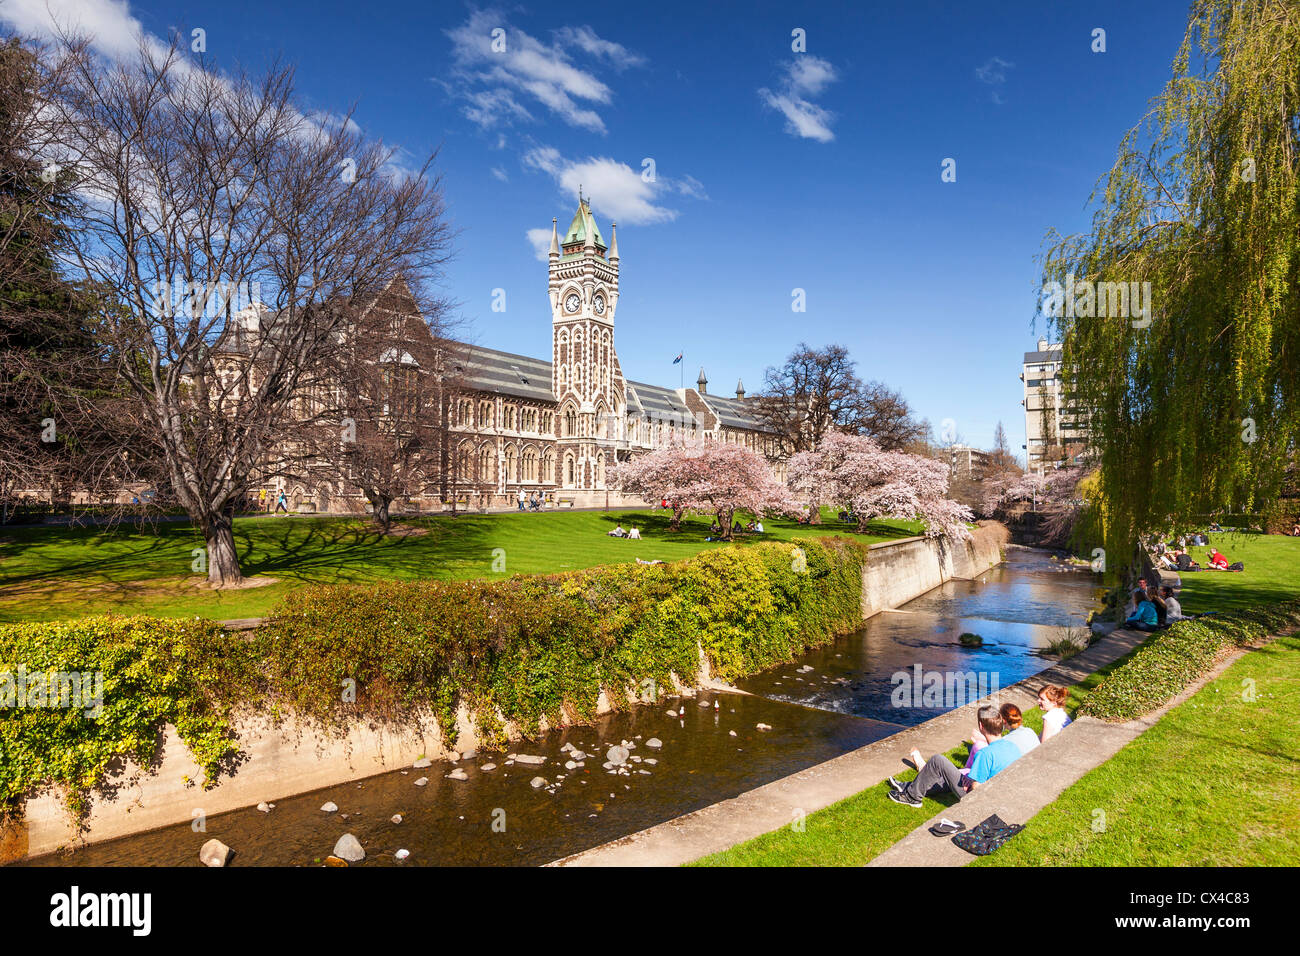 Università di Otago Campus, con la storica Torre dell Orologio edificio del Registro di sistema e la primavera sbocciano i fiori. Foto Stock